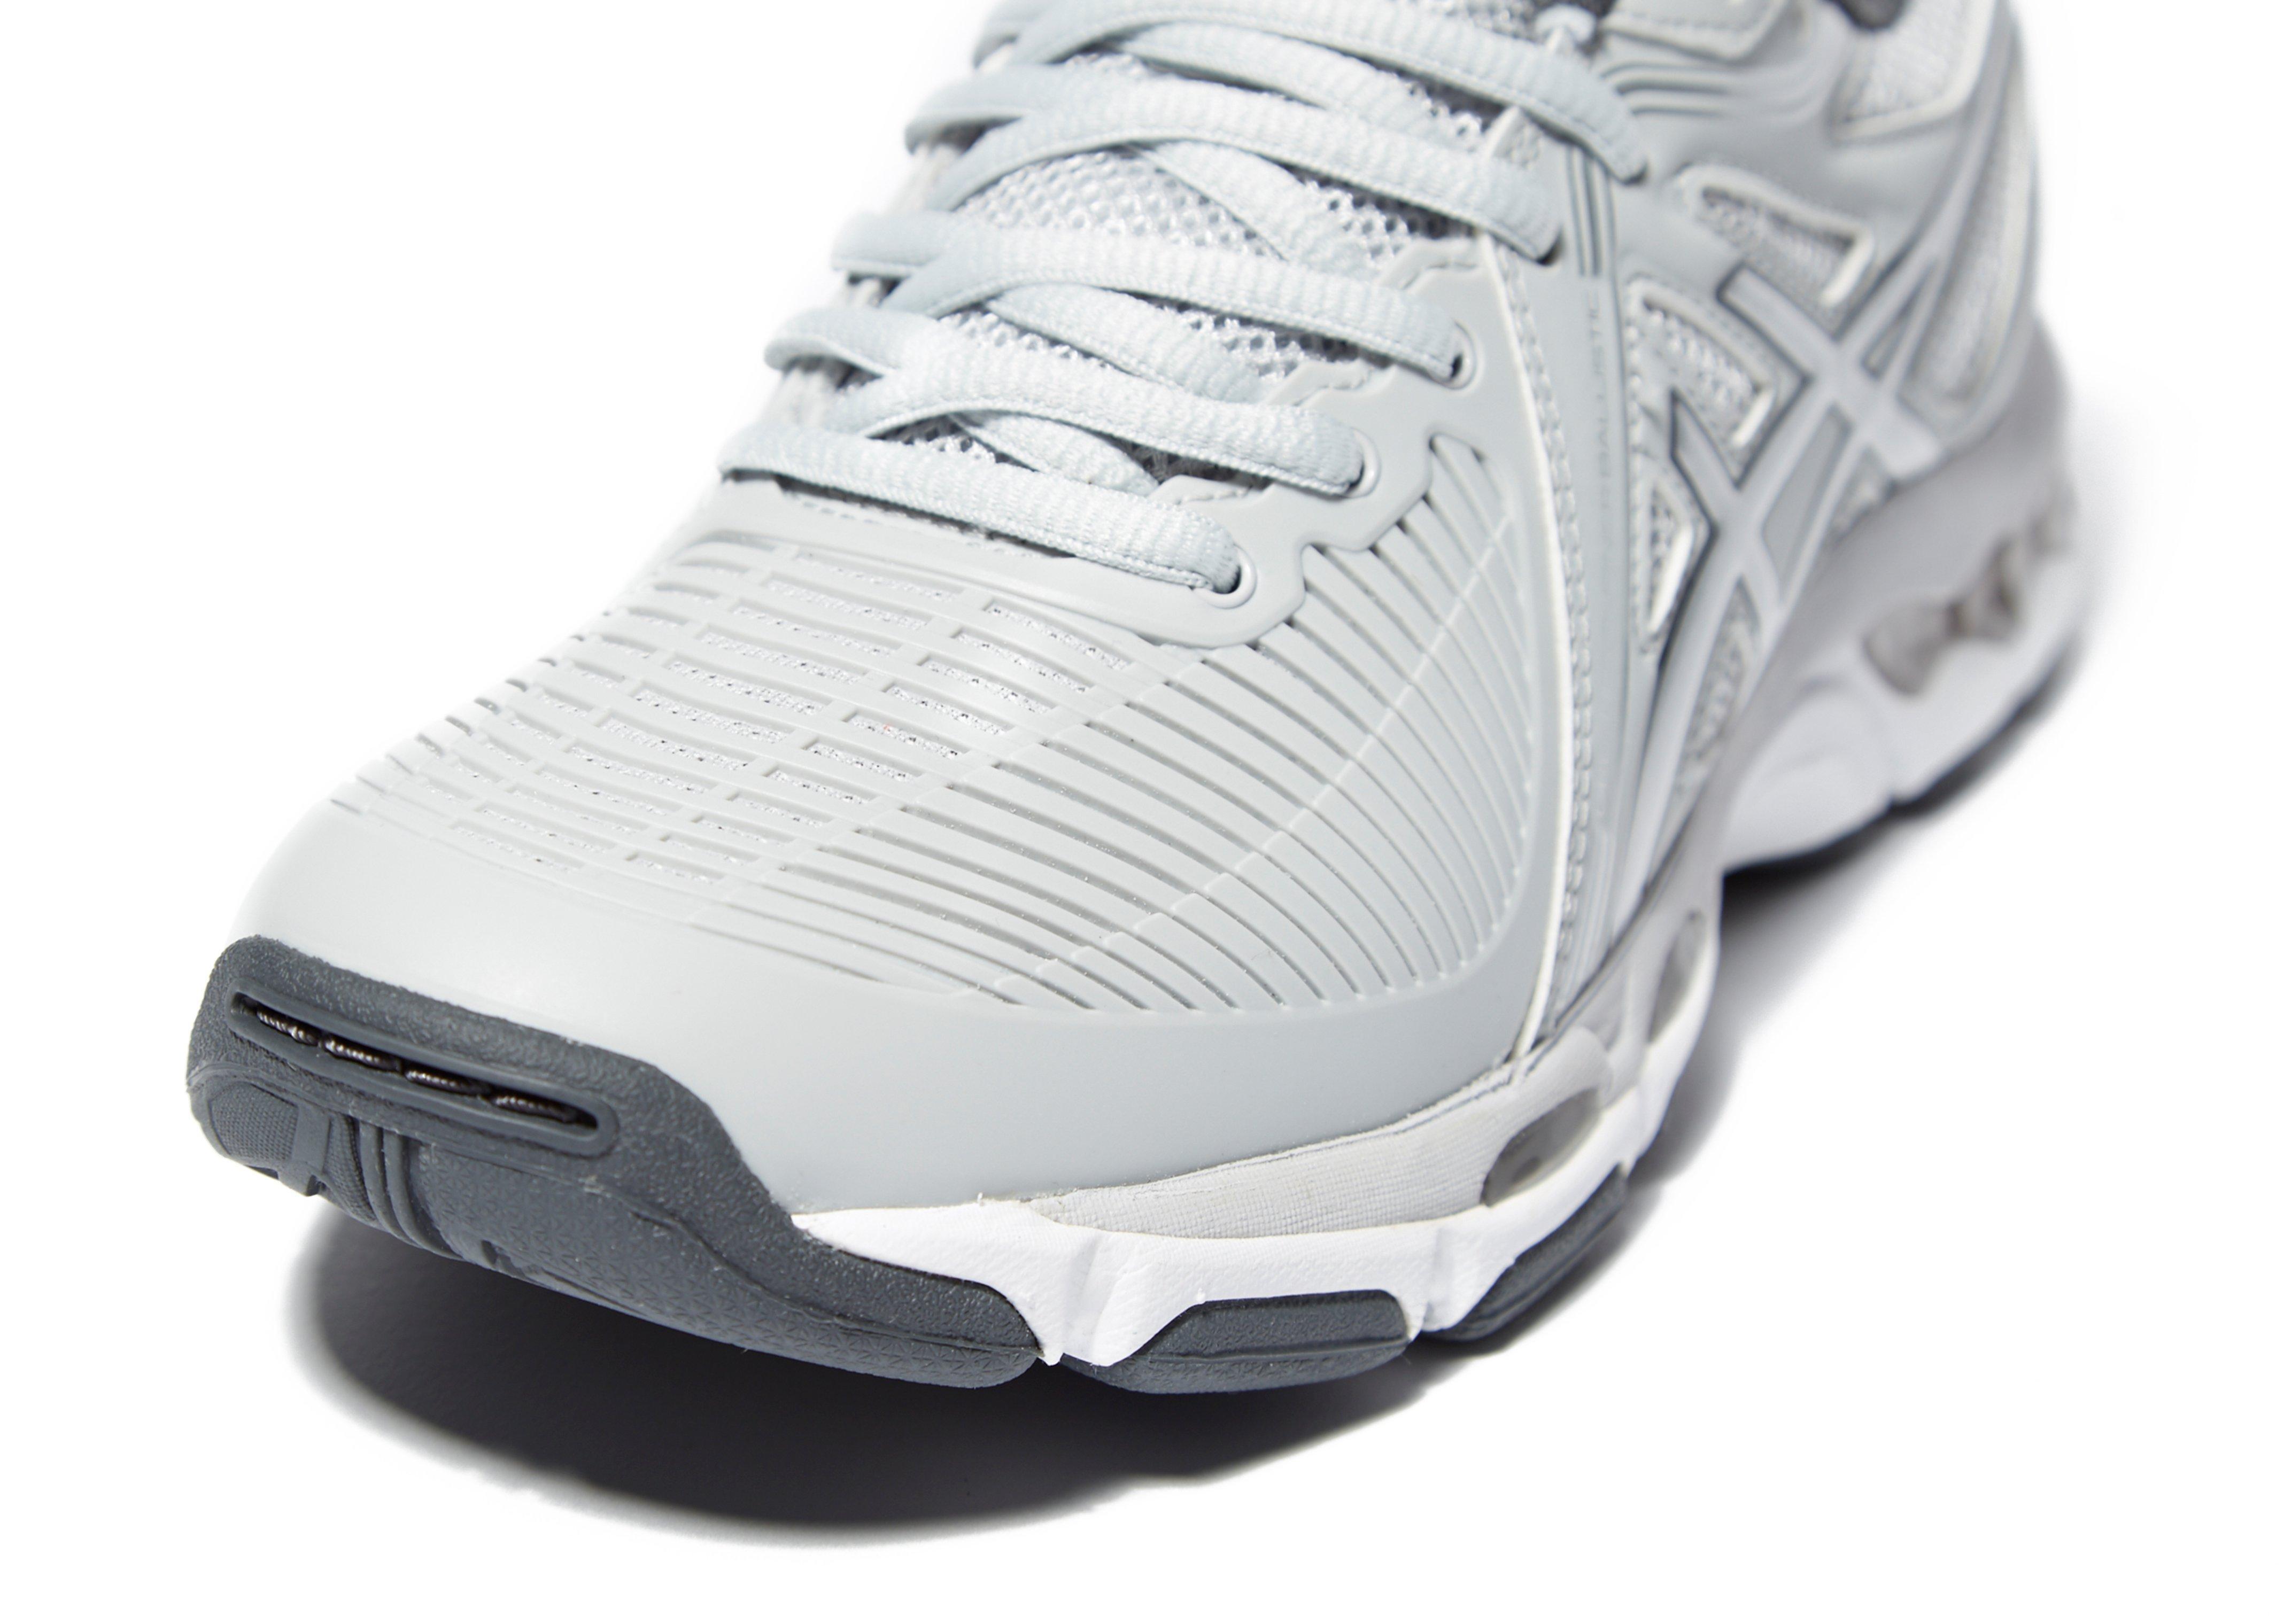 Asicsr White Gel Netburner Professional Netball Shoes 